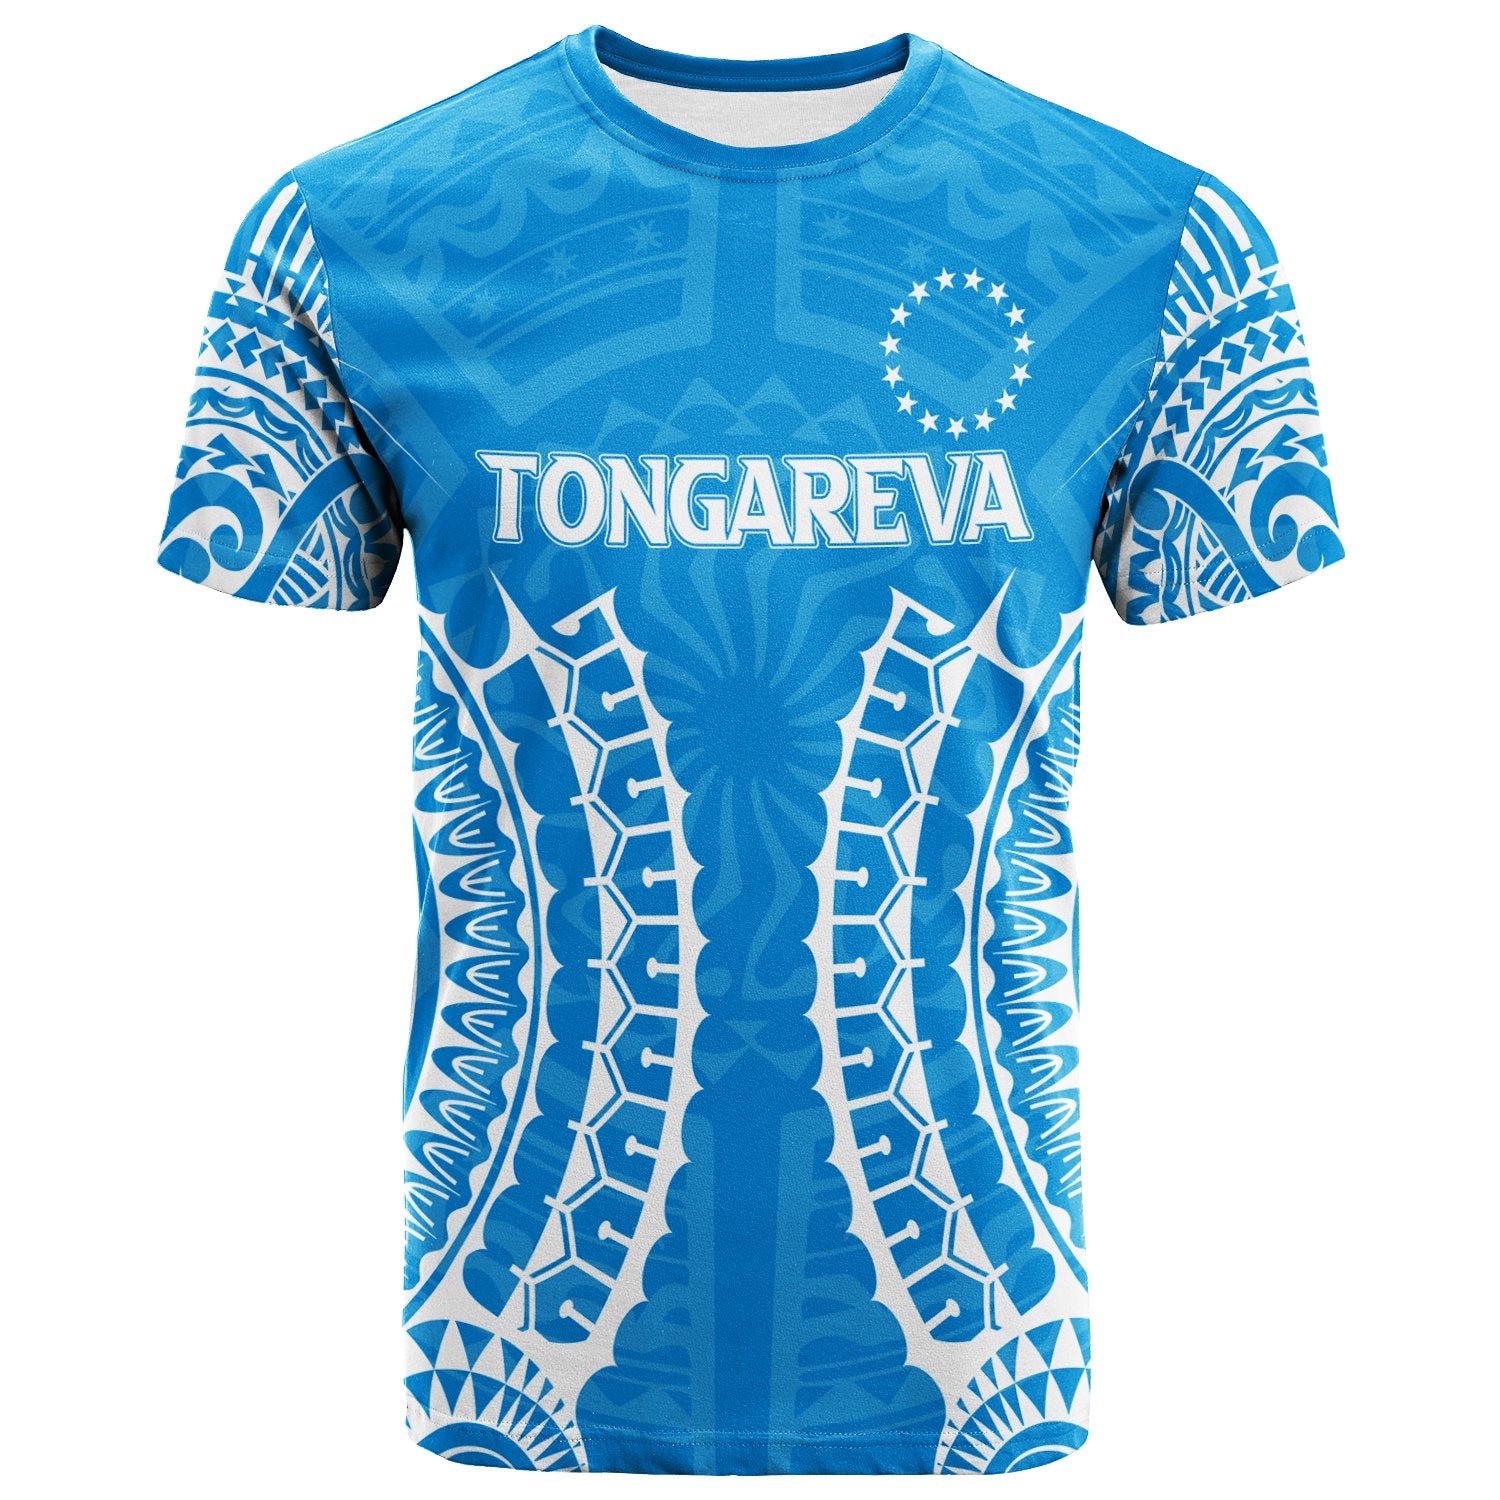 Cook Islands Tongareva T - Shirt Kid - Tribal Pattern - LT12 - Polynesian Pride